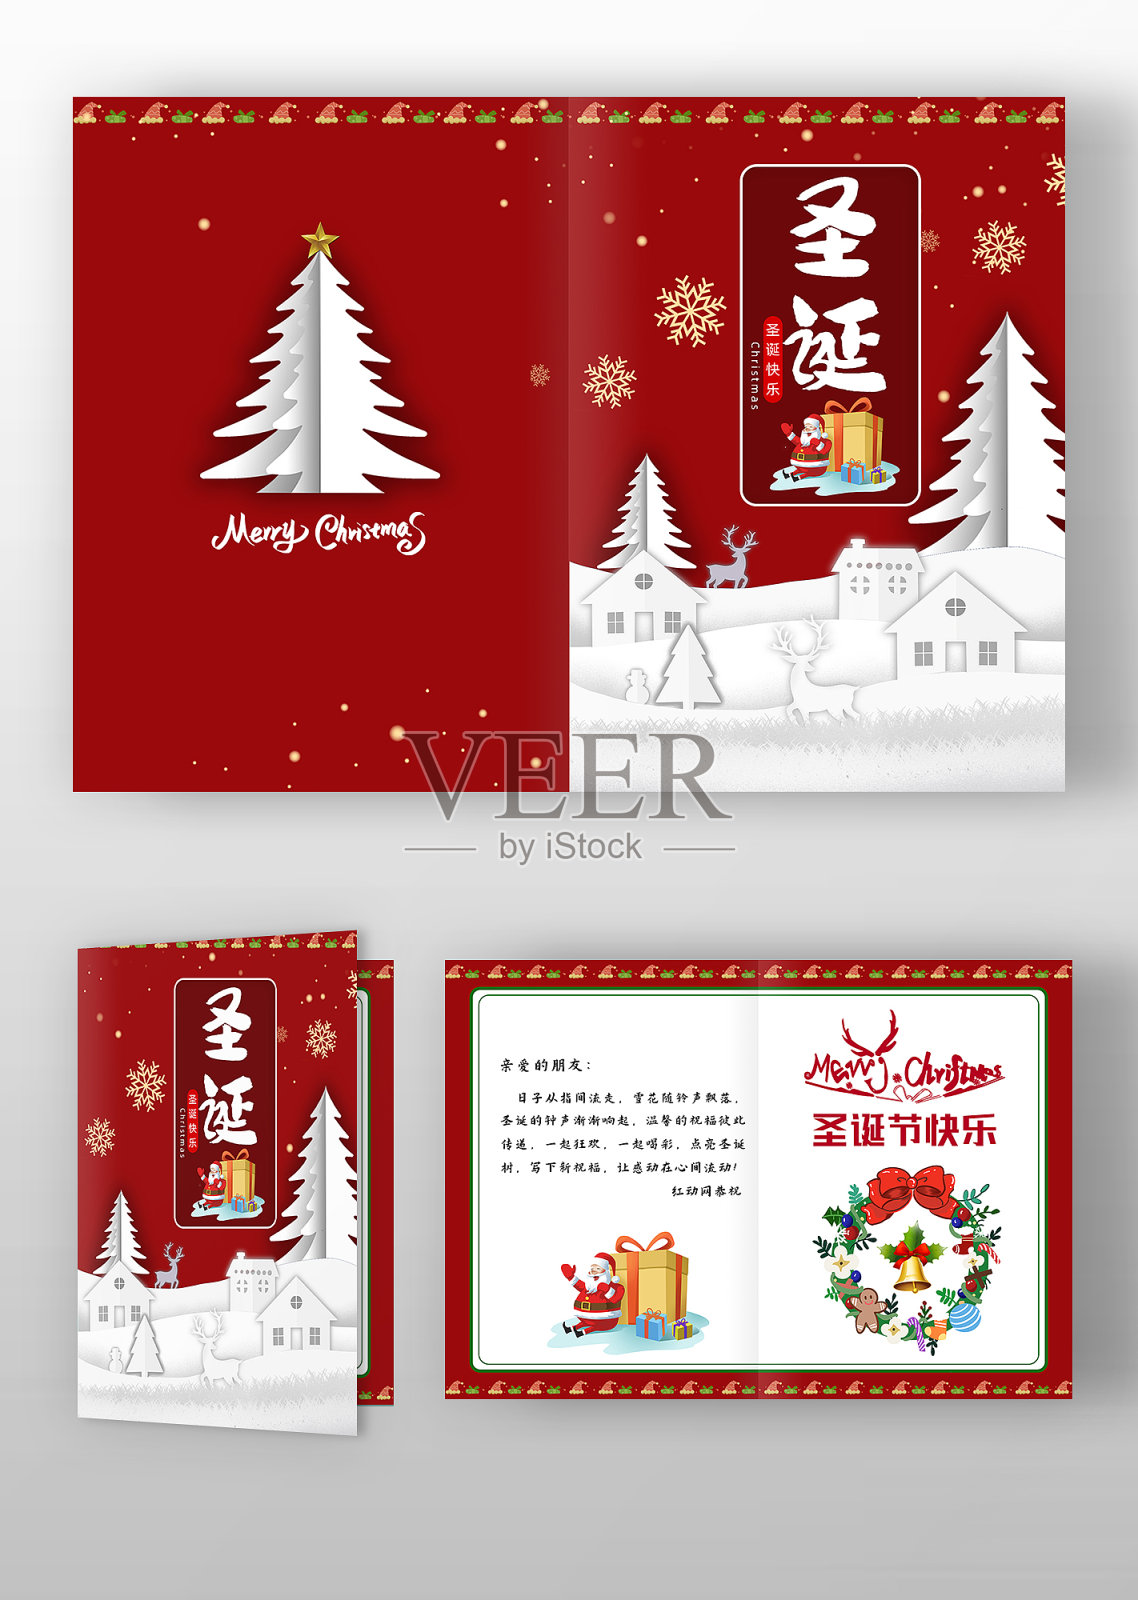 红色剪纸风格圣诞节贺卡设计模板素材